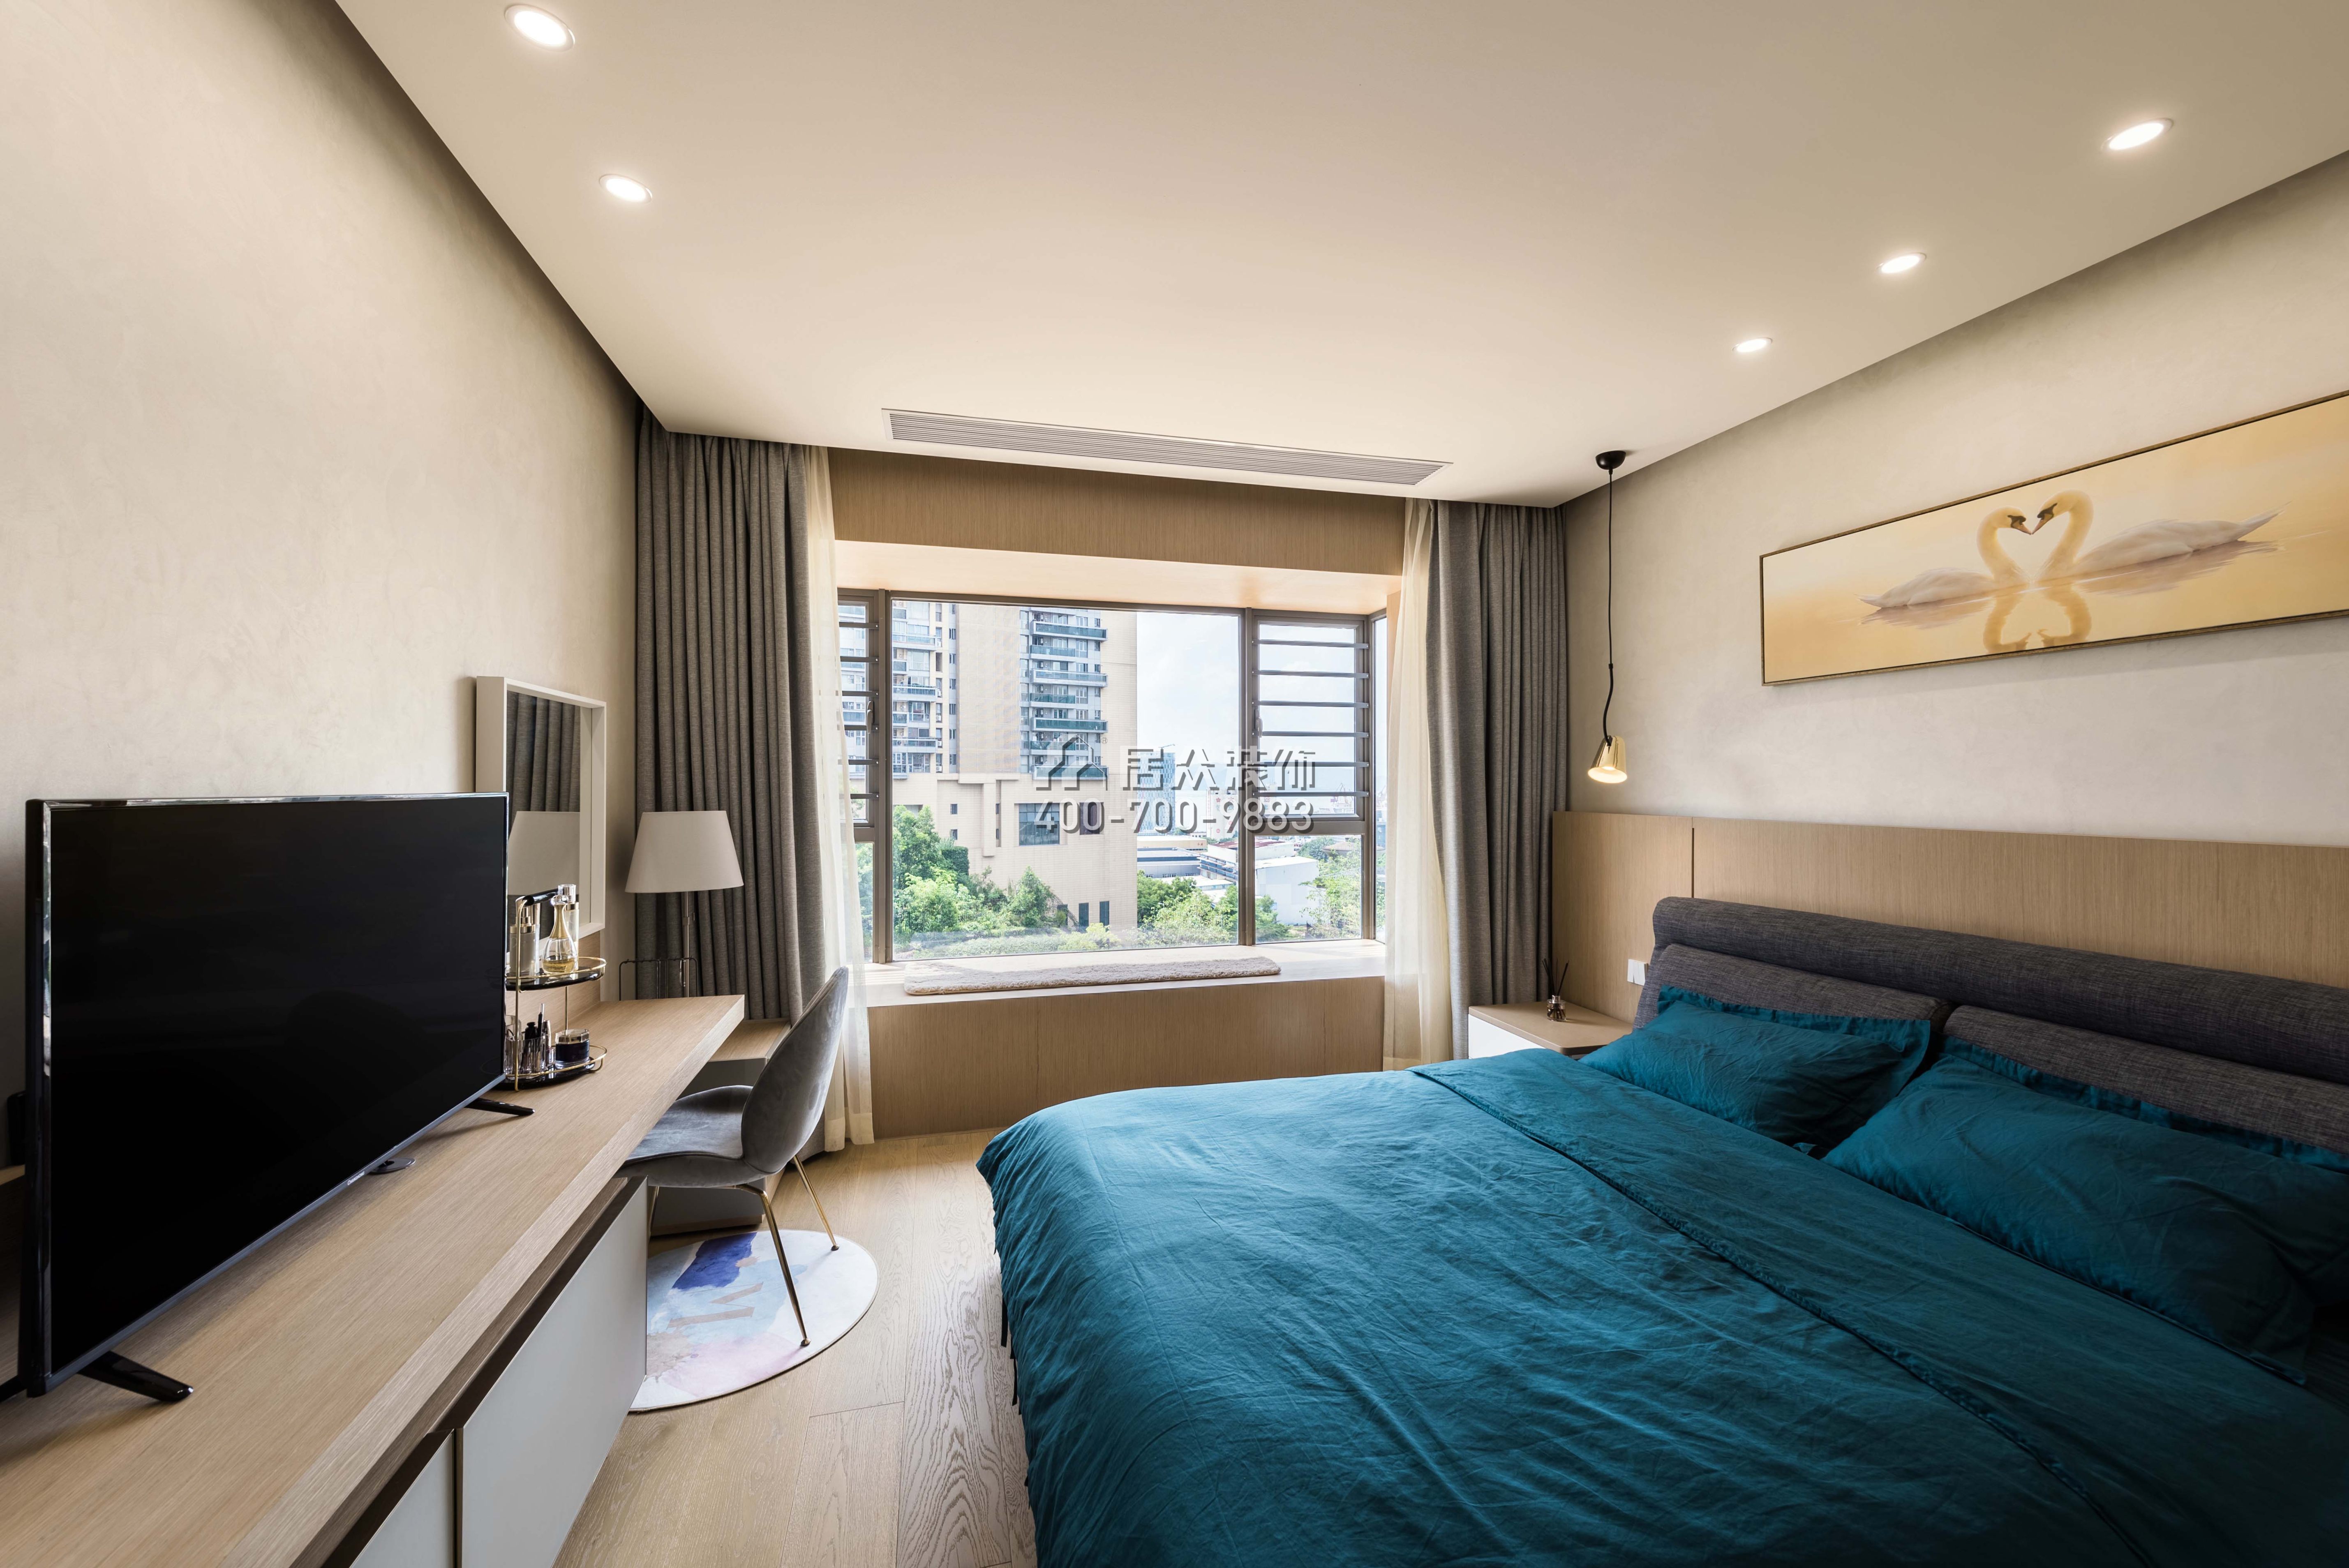 龍瑞佳園150平方米現代簡約風格平層戶型臥室裝修效果圖